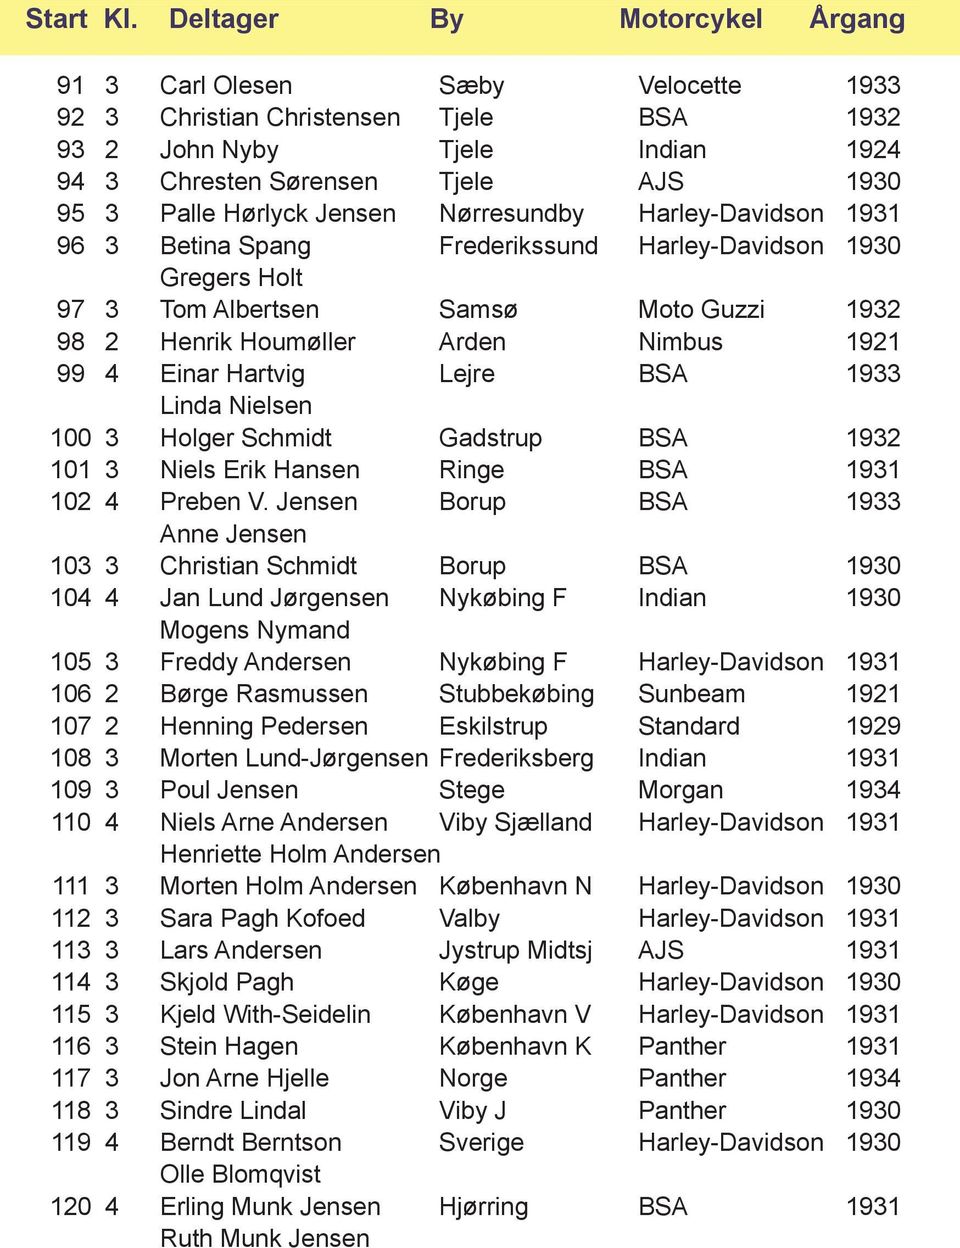 1933 Linda Nielsen 100 3 Holger Schmidt Gadstrup BSA 1932 101 3 Niels Erik Hansen Ringe BSA 1931 102 4 Preben V.